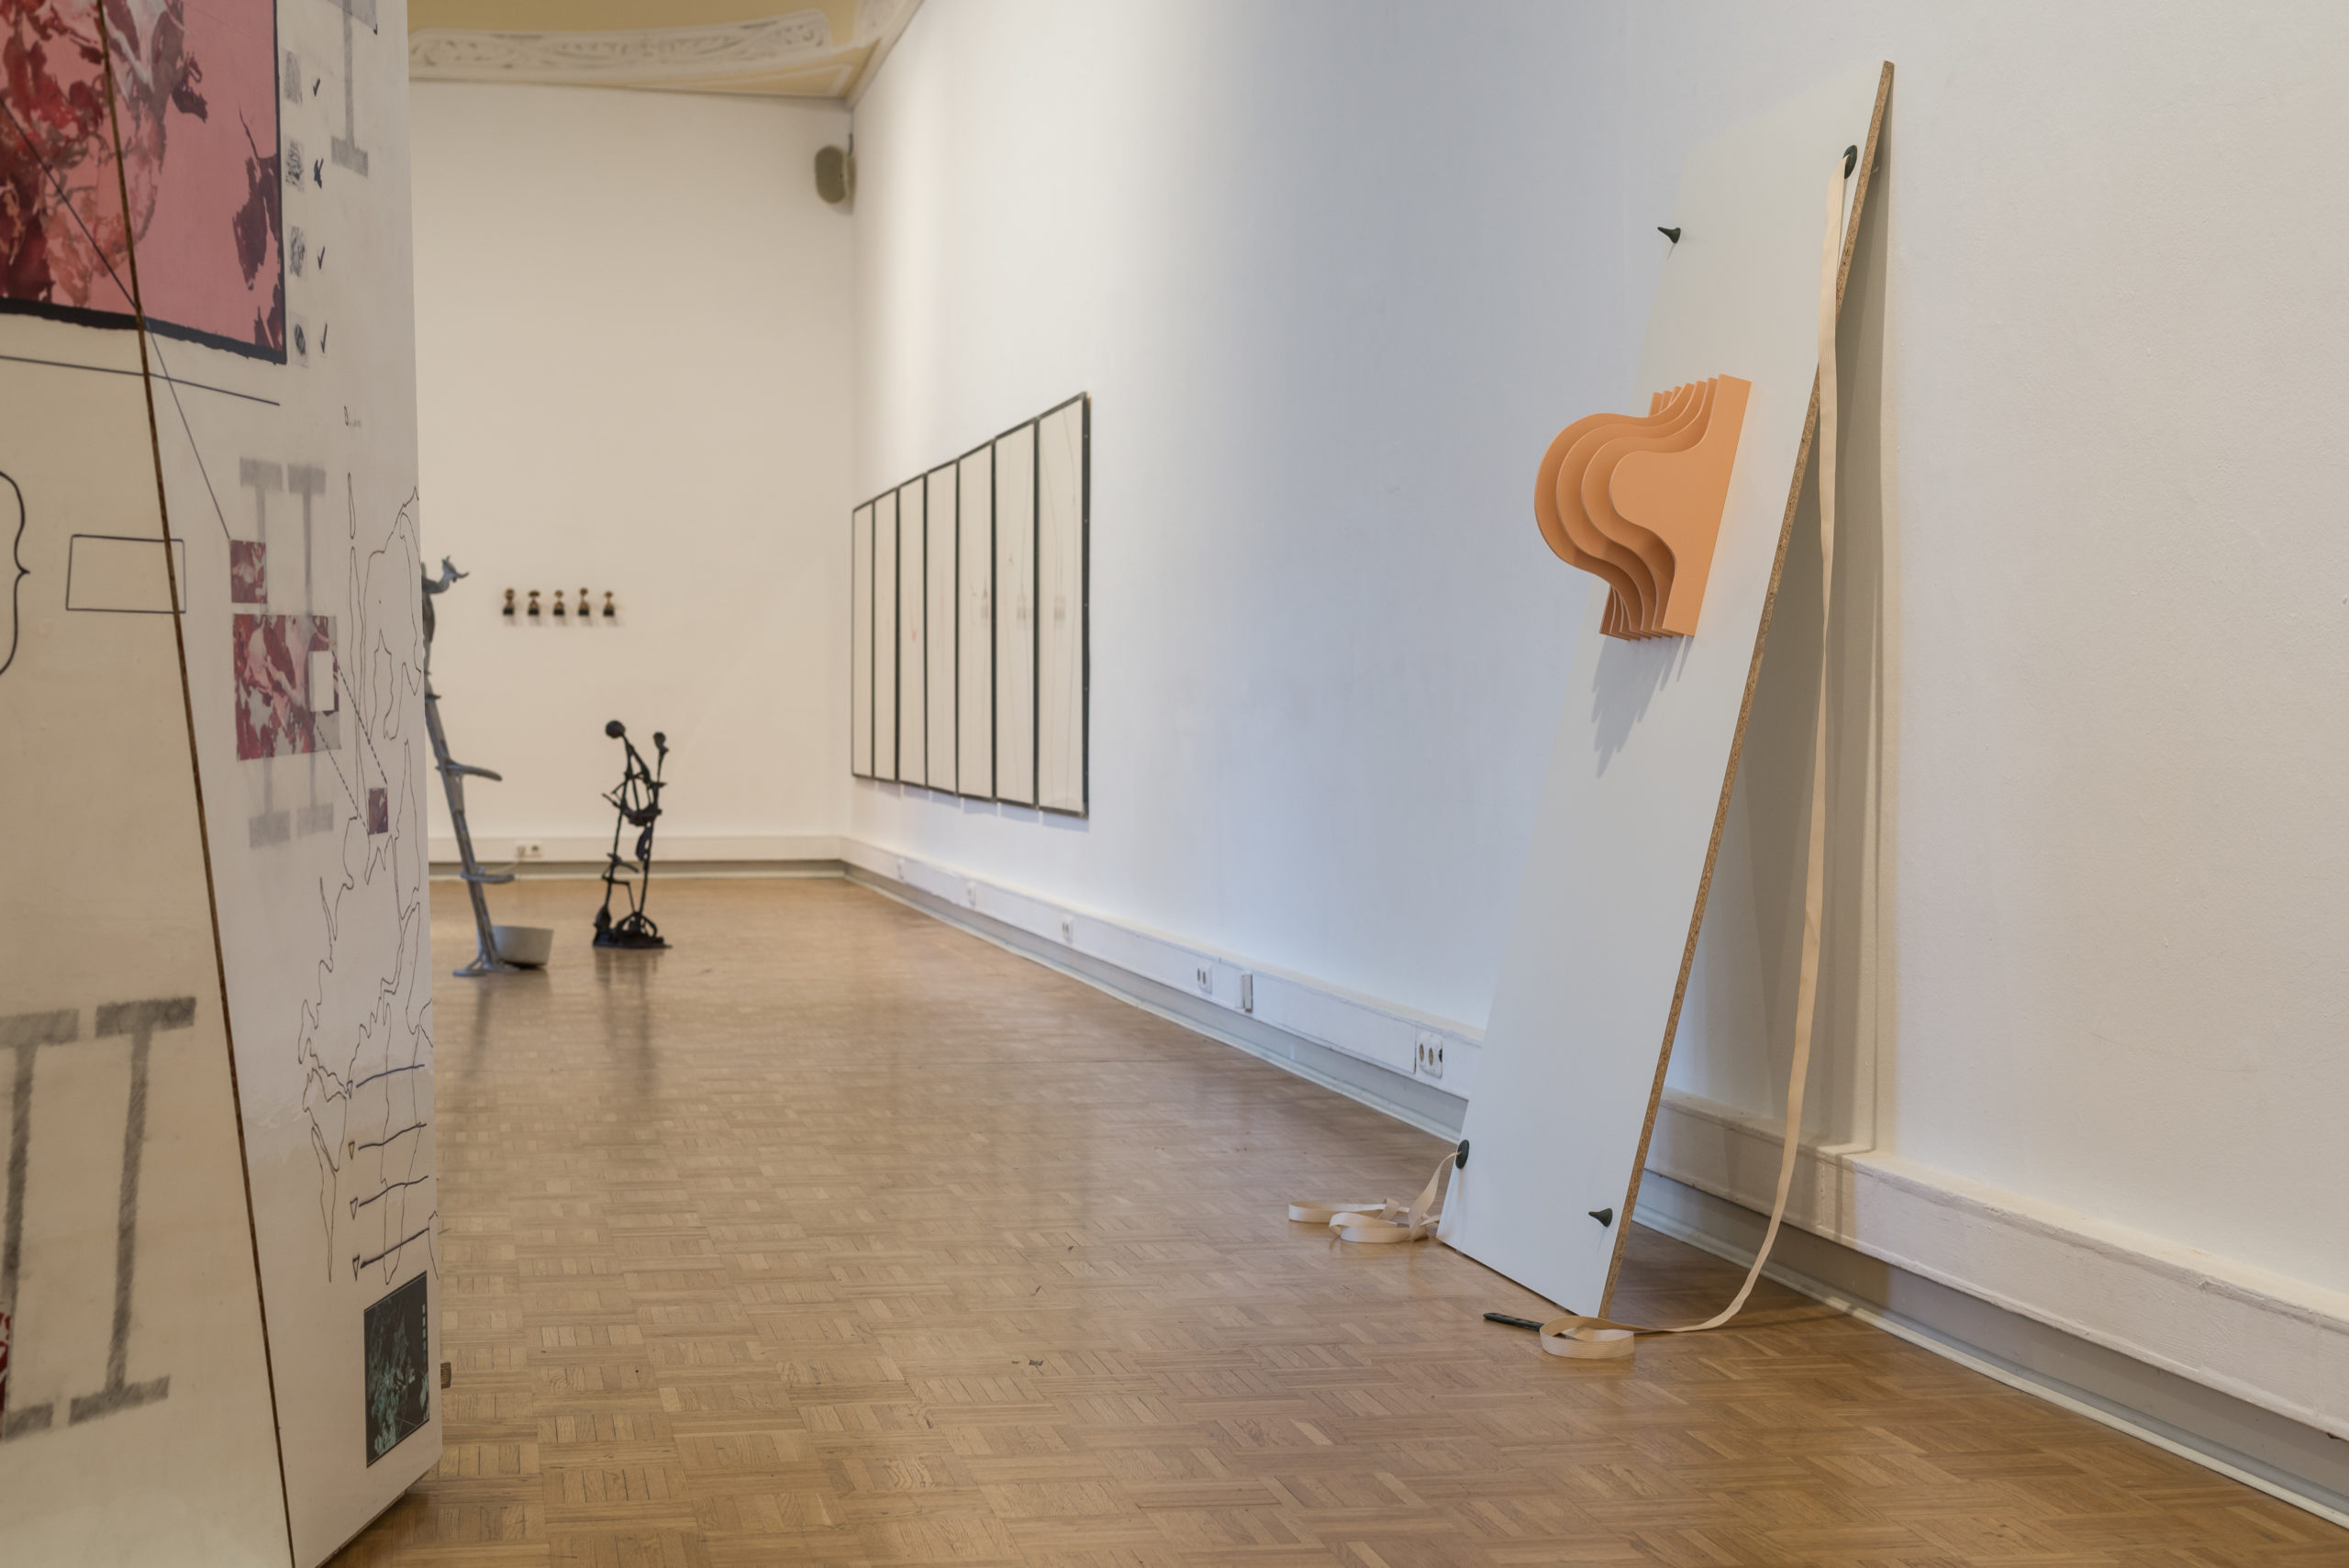 ANNEX, Doppelausstellung von Paul Schuseil und Stefan Seelge, Ausstellungsansicht Kunstverein Bellevue-Saal Wiesbaden März 2020(Foto: Dirk Uebele)